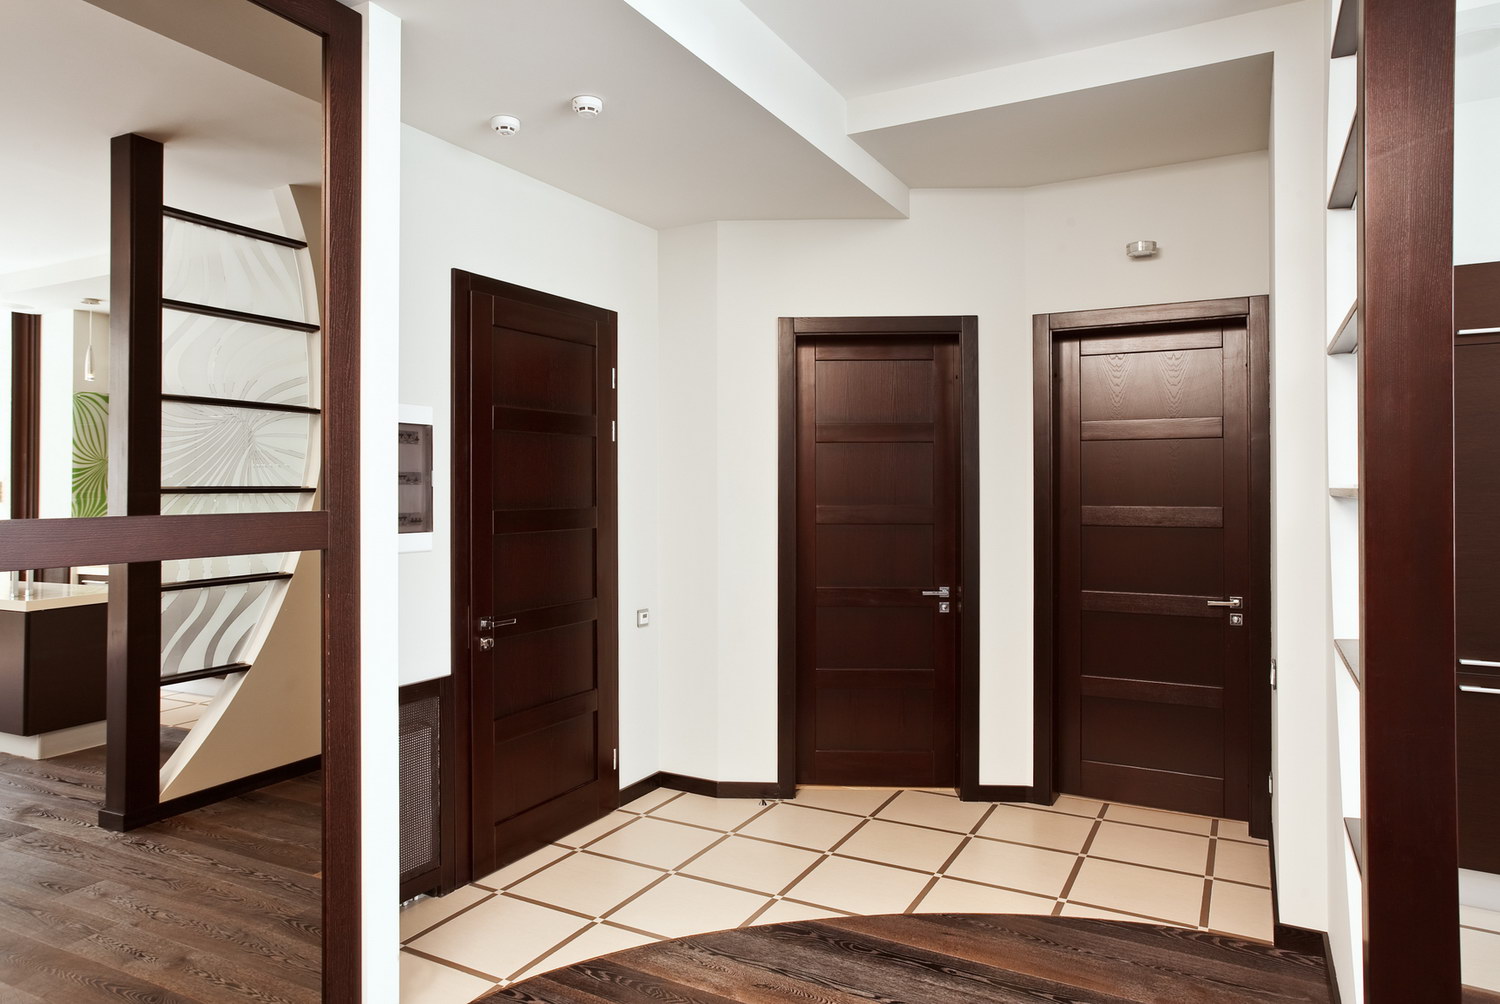 Ремонт межкомнатных дверей квартире. Интерьер квартиры с коричневыми дверями. Дверь коричневая. Разные двери в интерьере квартиры. Межкомнатные двери в коридоре.